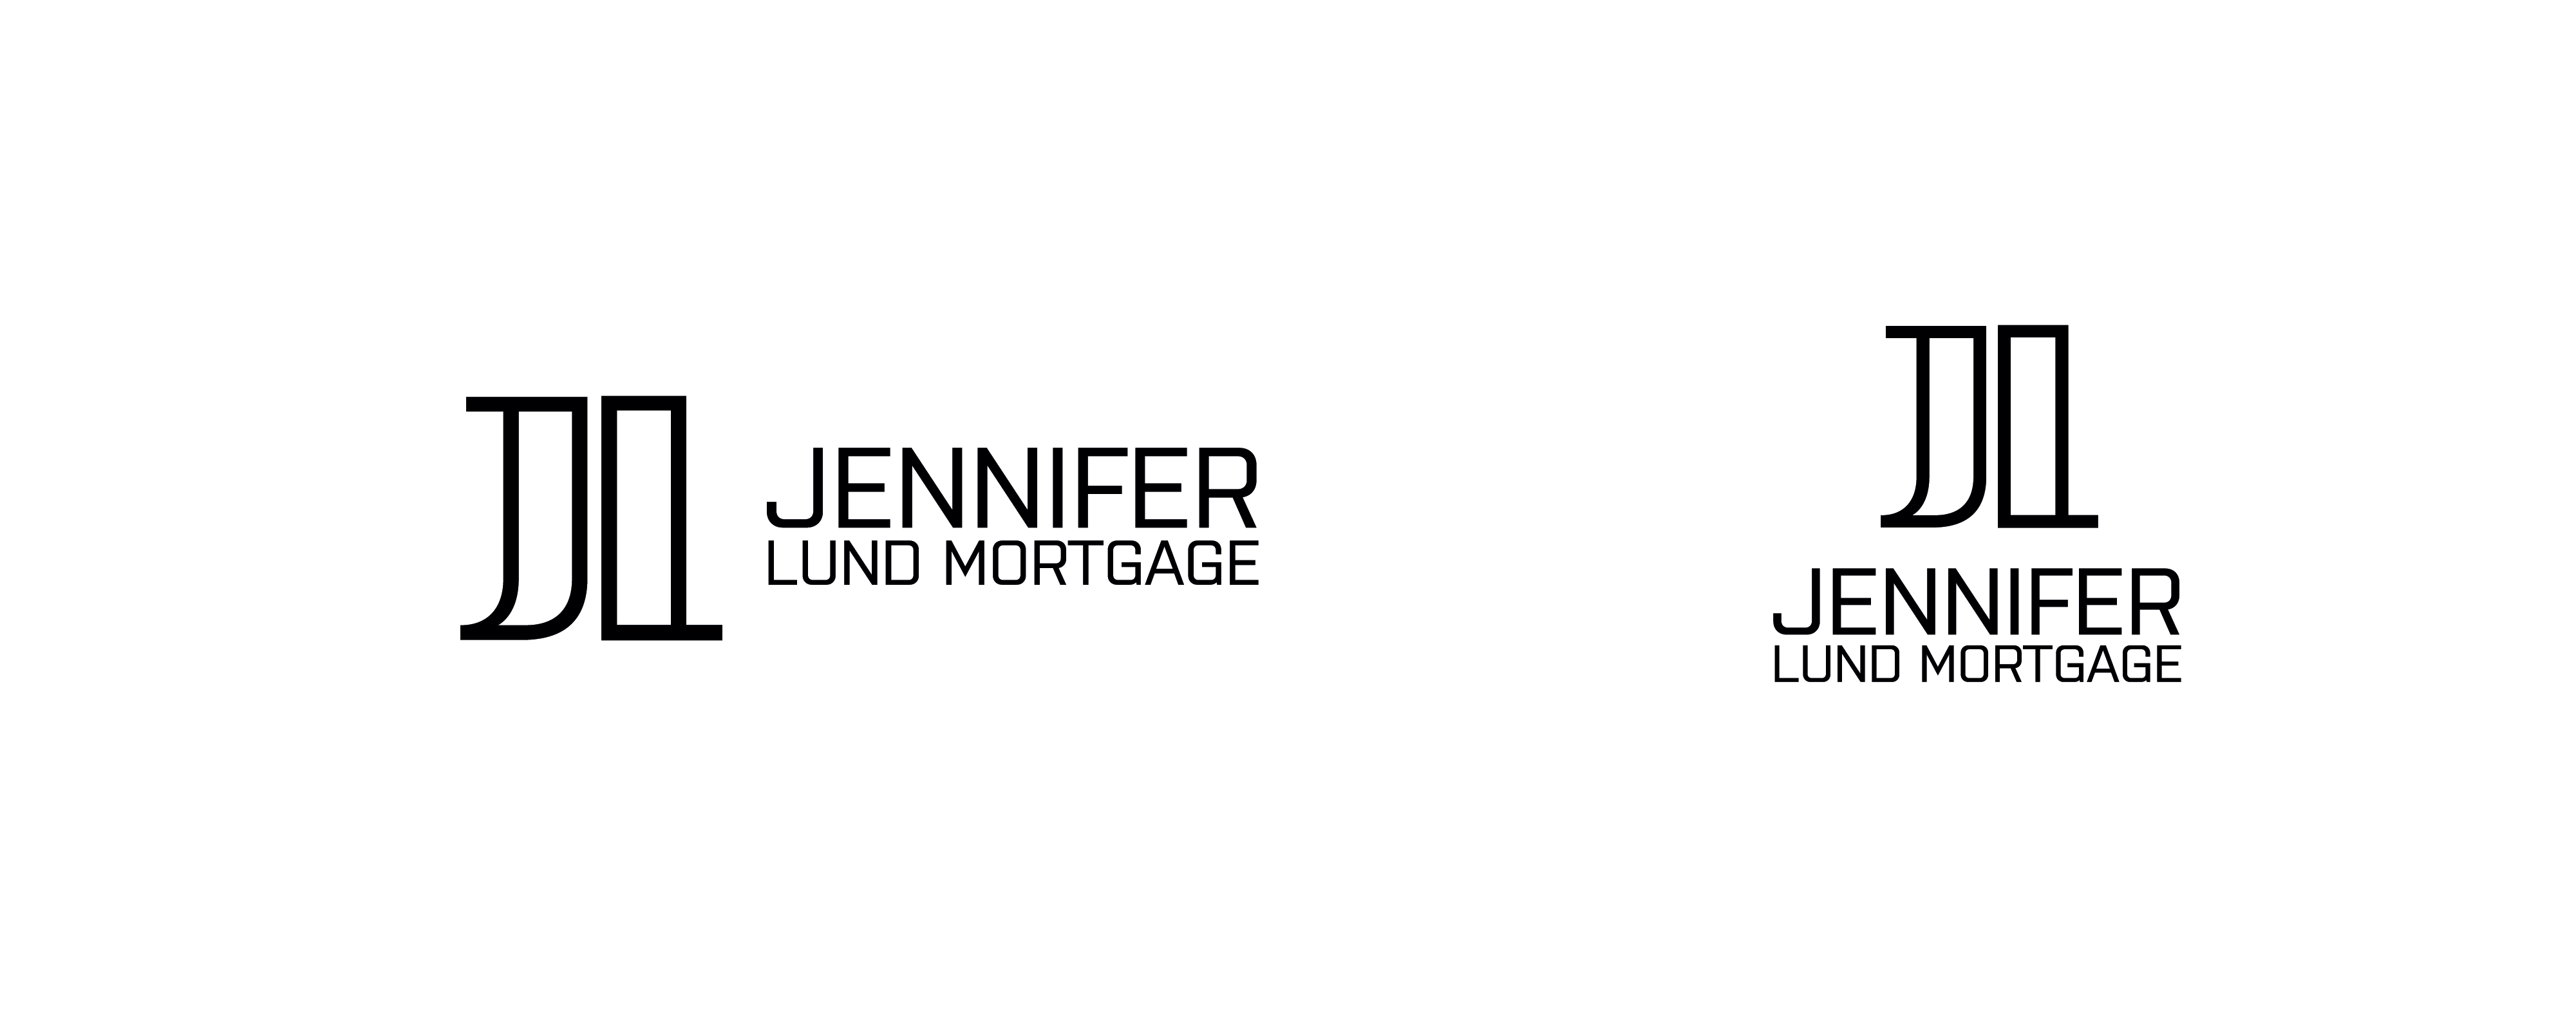 Before logo for mortgage broker Jennifer Lund